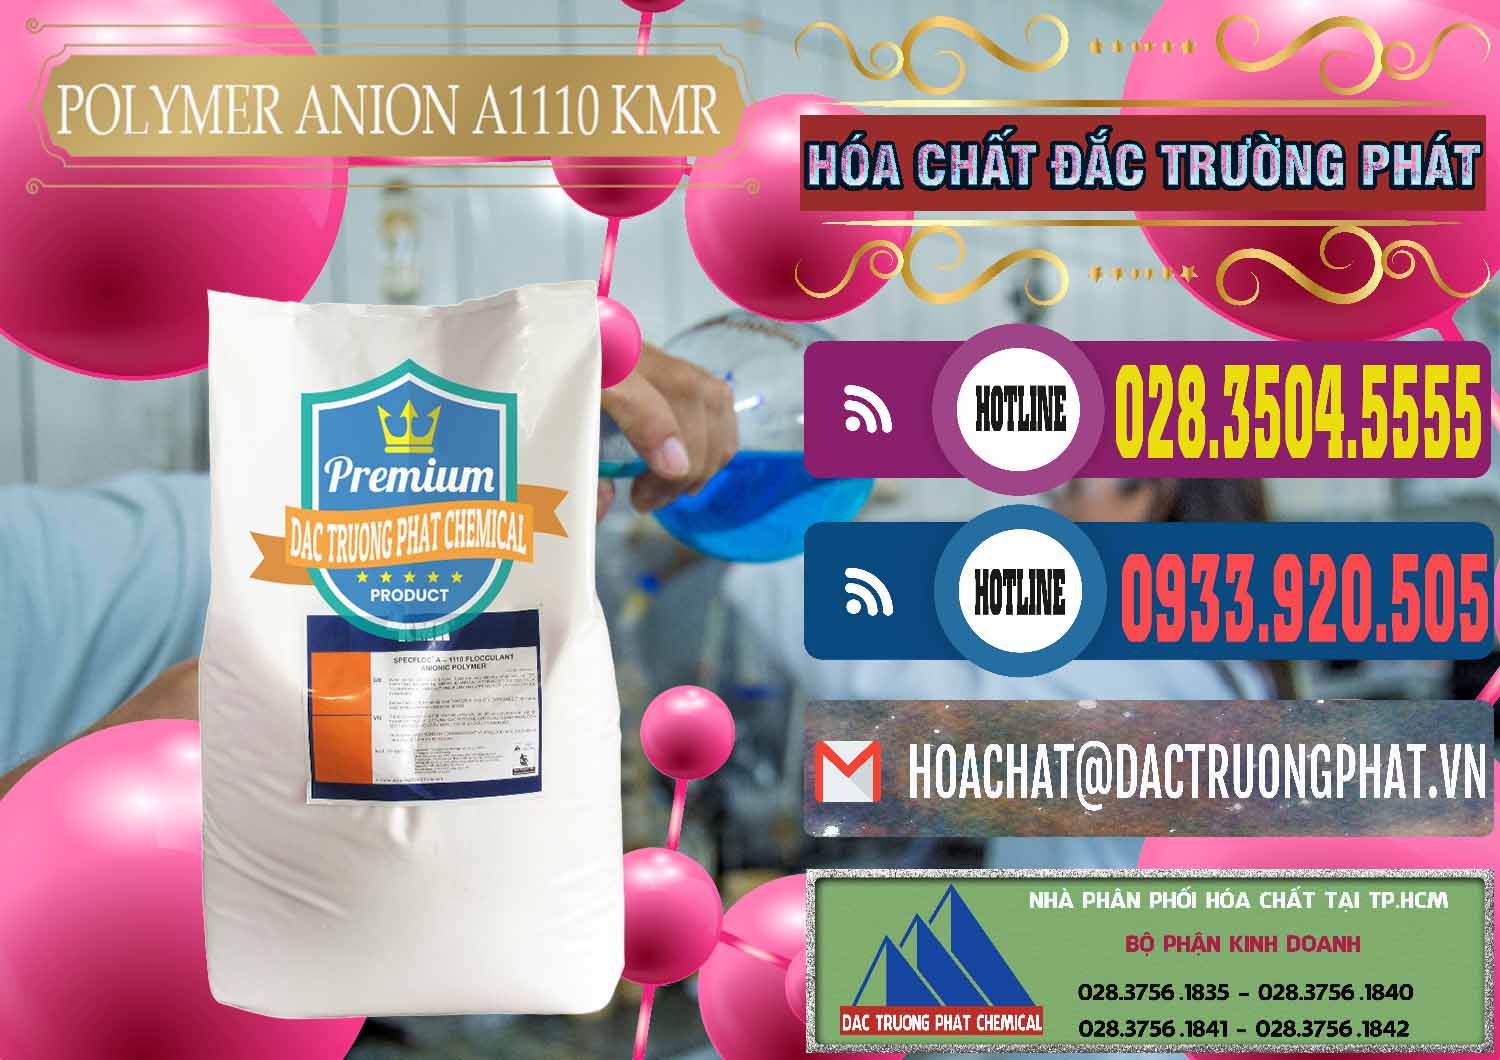 Chuyên bán - cung ứng Polymer Anion A1110 - KMR Anh Quốc England - 0118 - Nhà cung cấp & phân phối hóa chất tại TP.HCM - muabanhoachat.com.vn